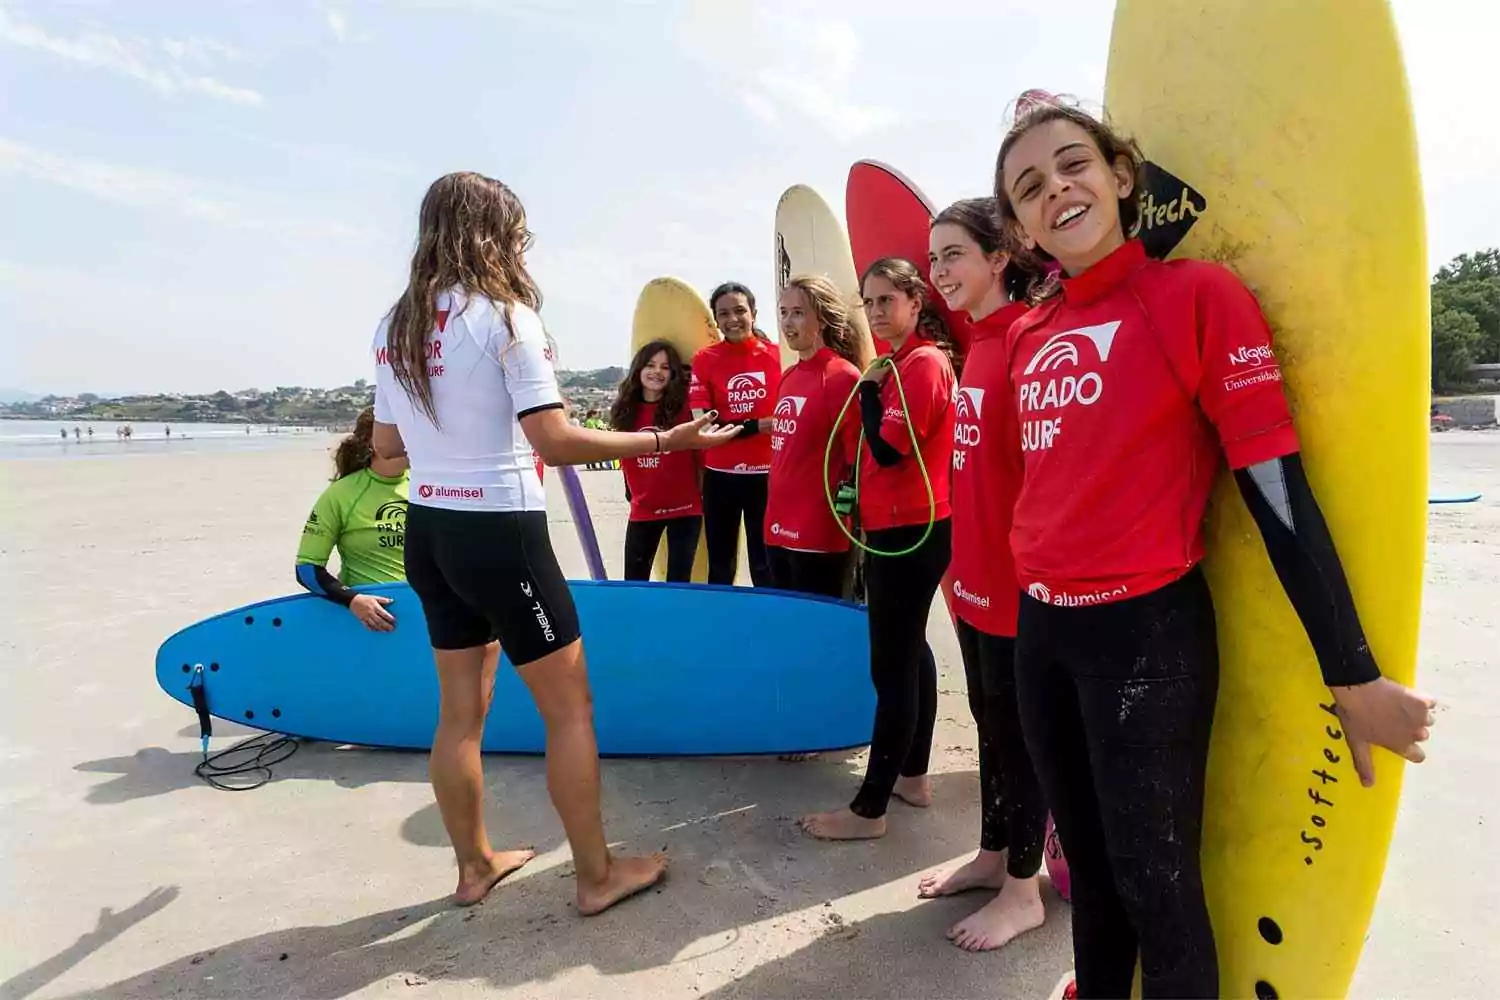 Clases de surf en La Coruña, Galicia con “Prado”🏄🏝️